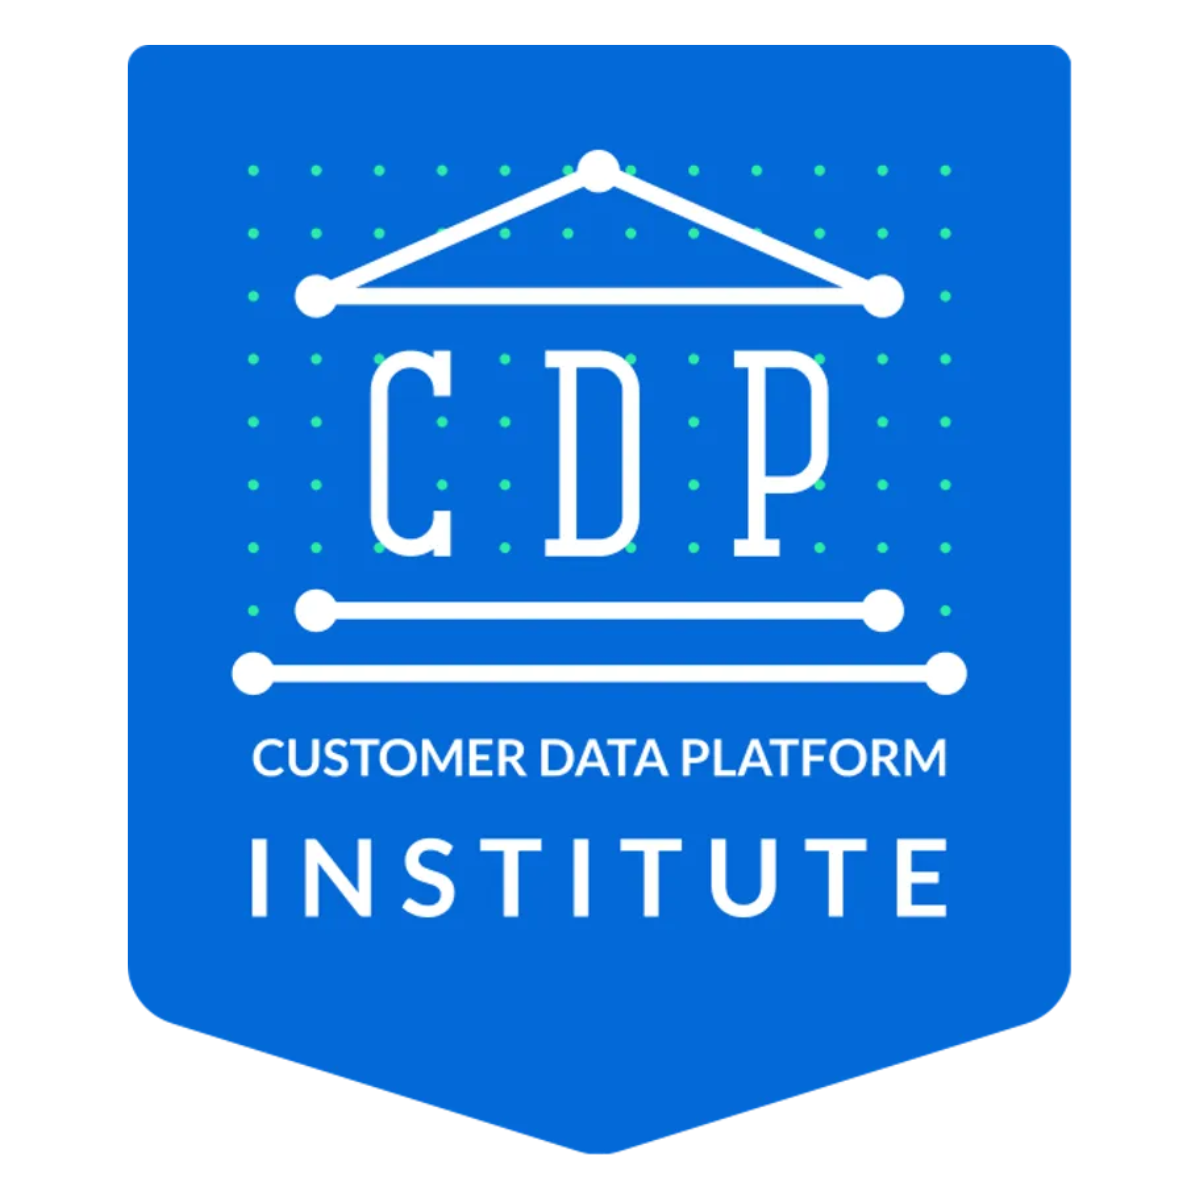 CDP Institution